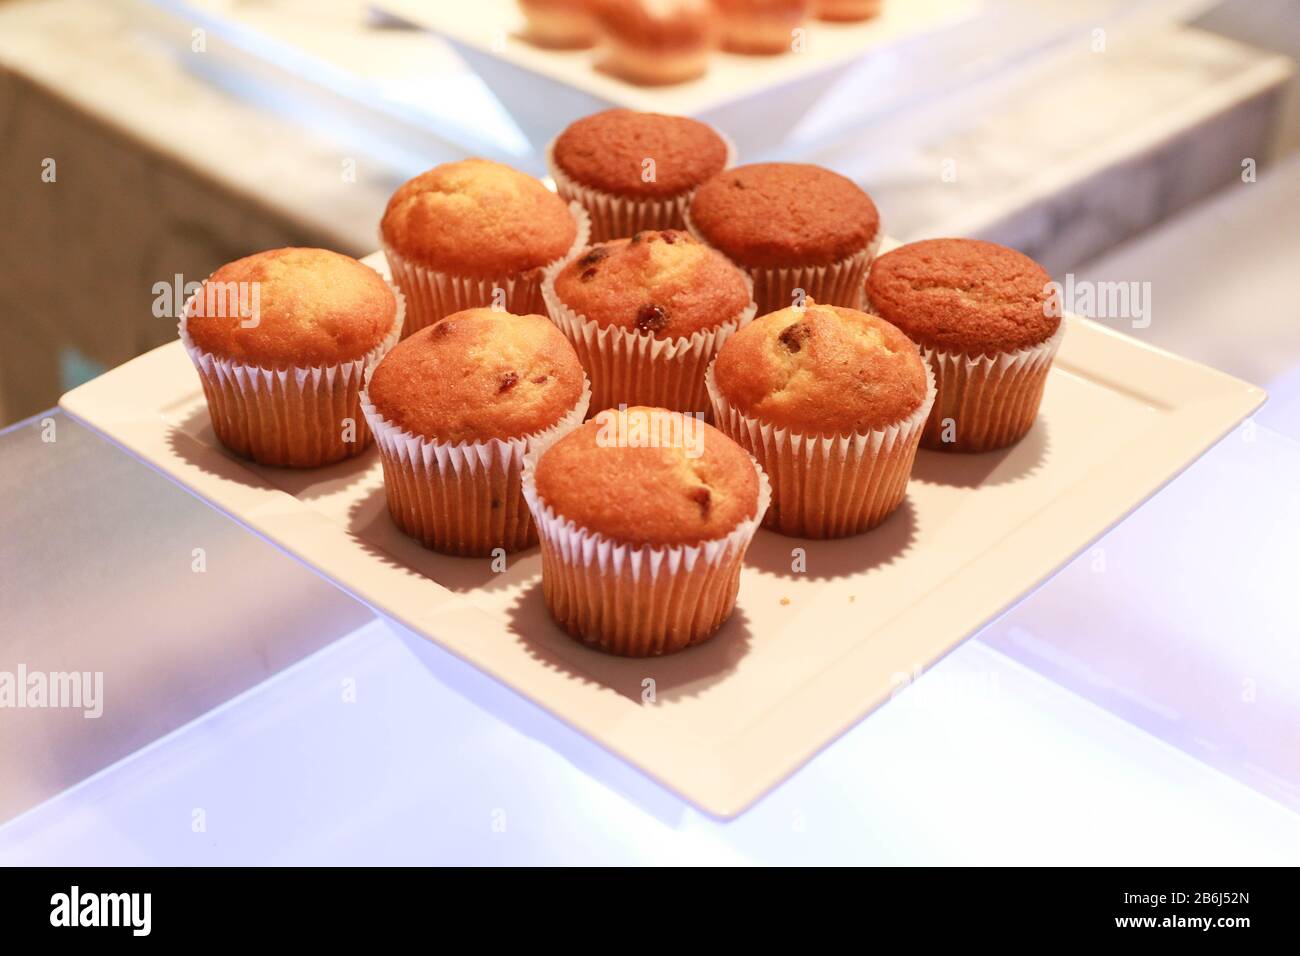 Muffins cupcake servi dans une assiette blanche sur une boulangerie Banque D'Images